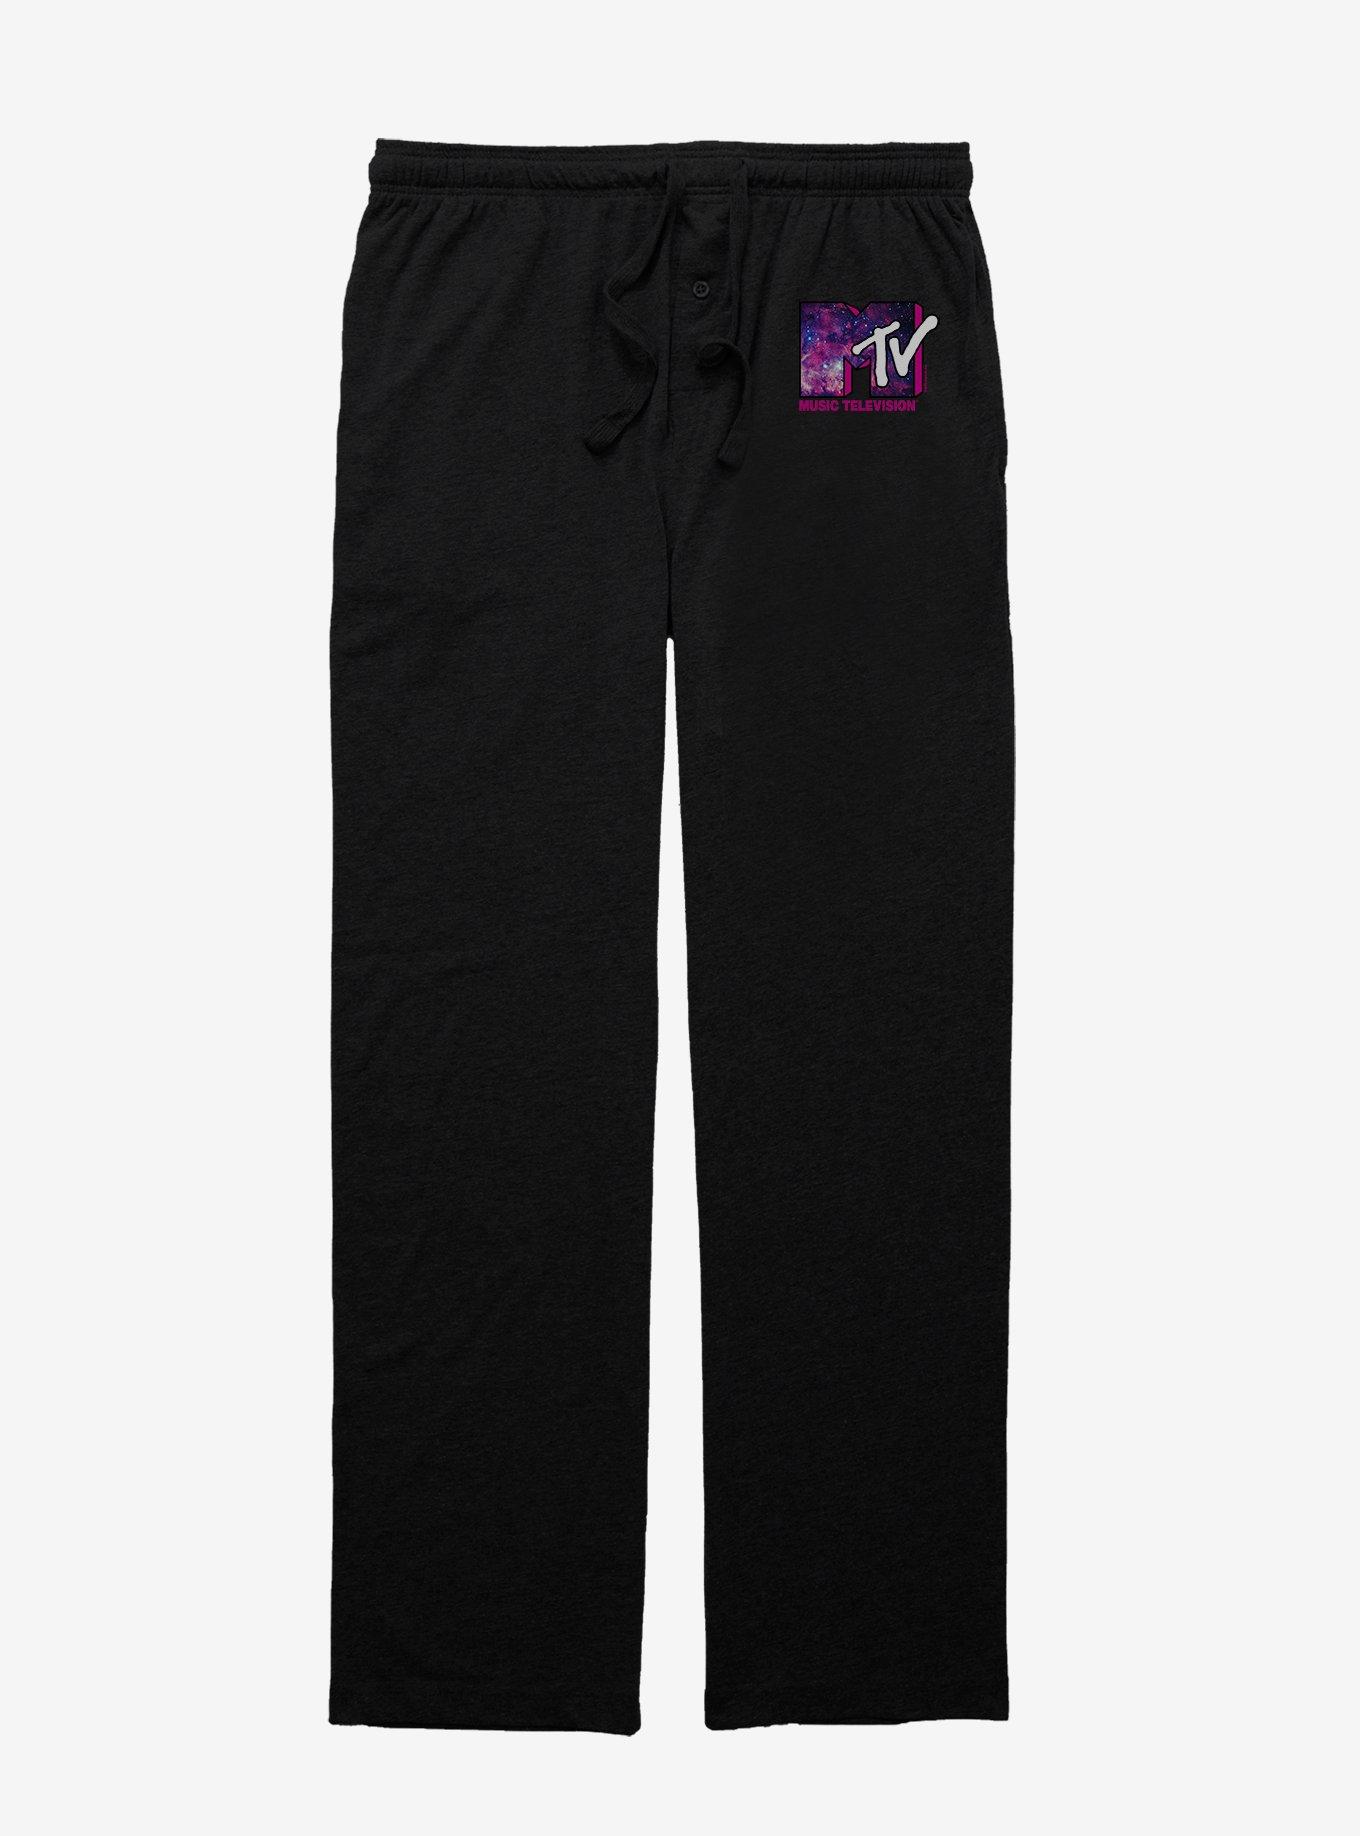 MTV Galaxy Fill Logo Pajama Pants, BLACK, hi-res